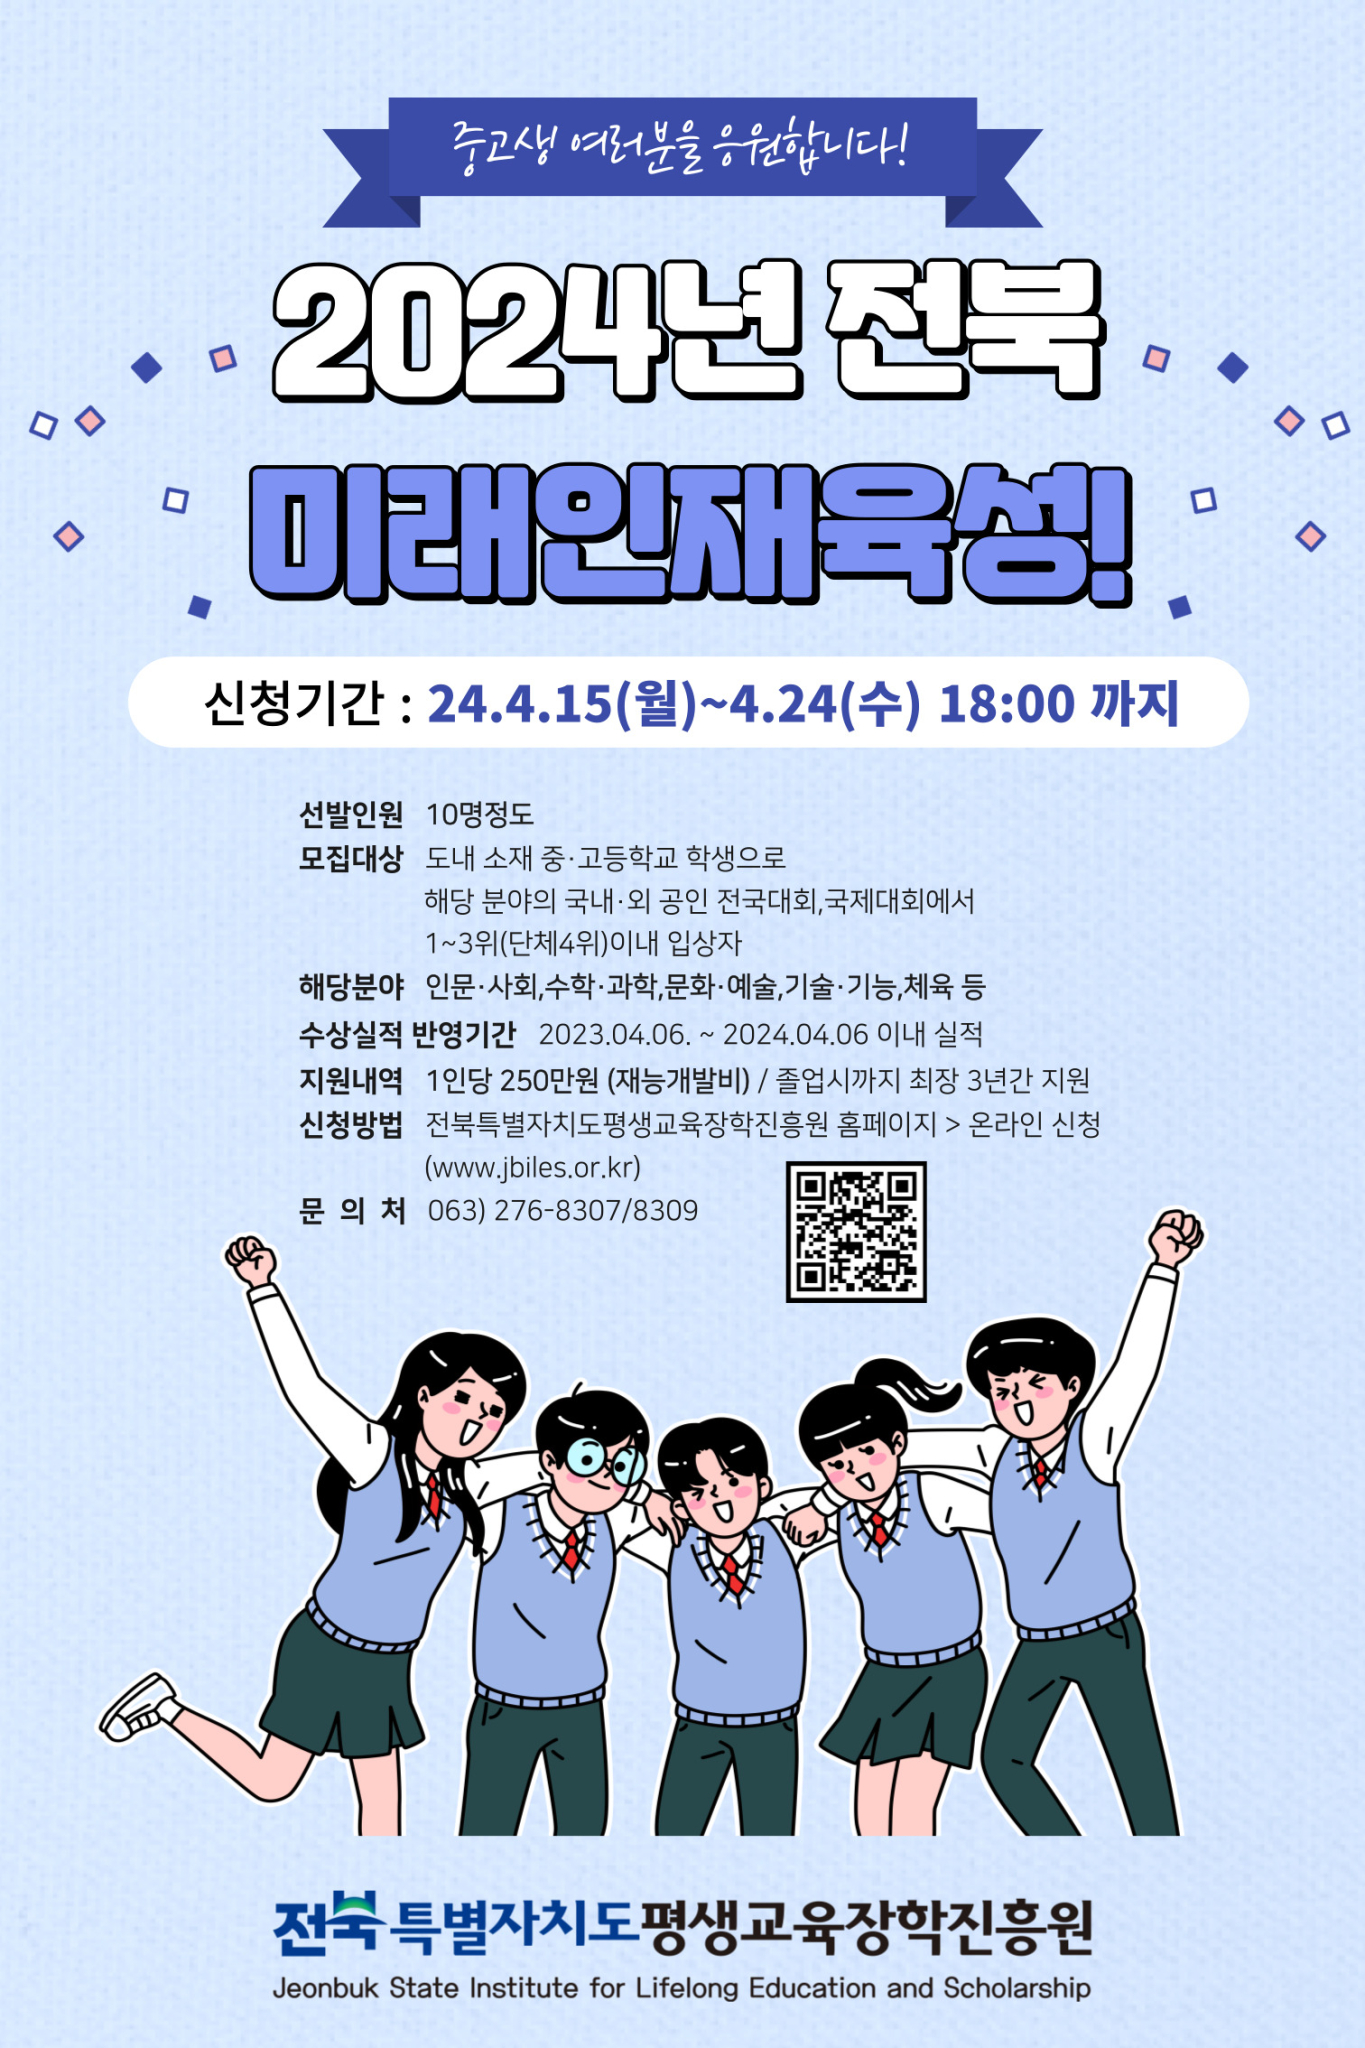 2.전북 미래인재 홍보 포스터